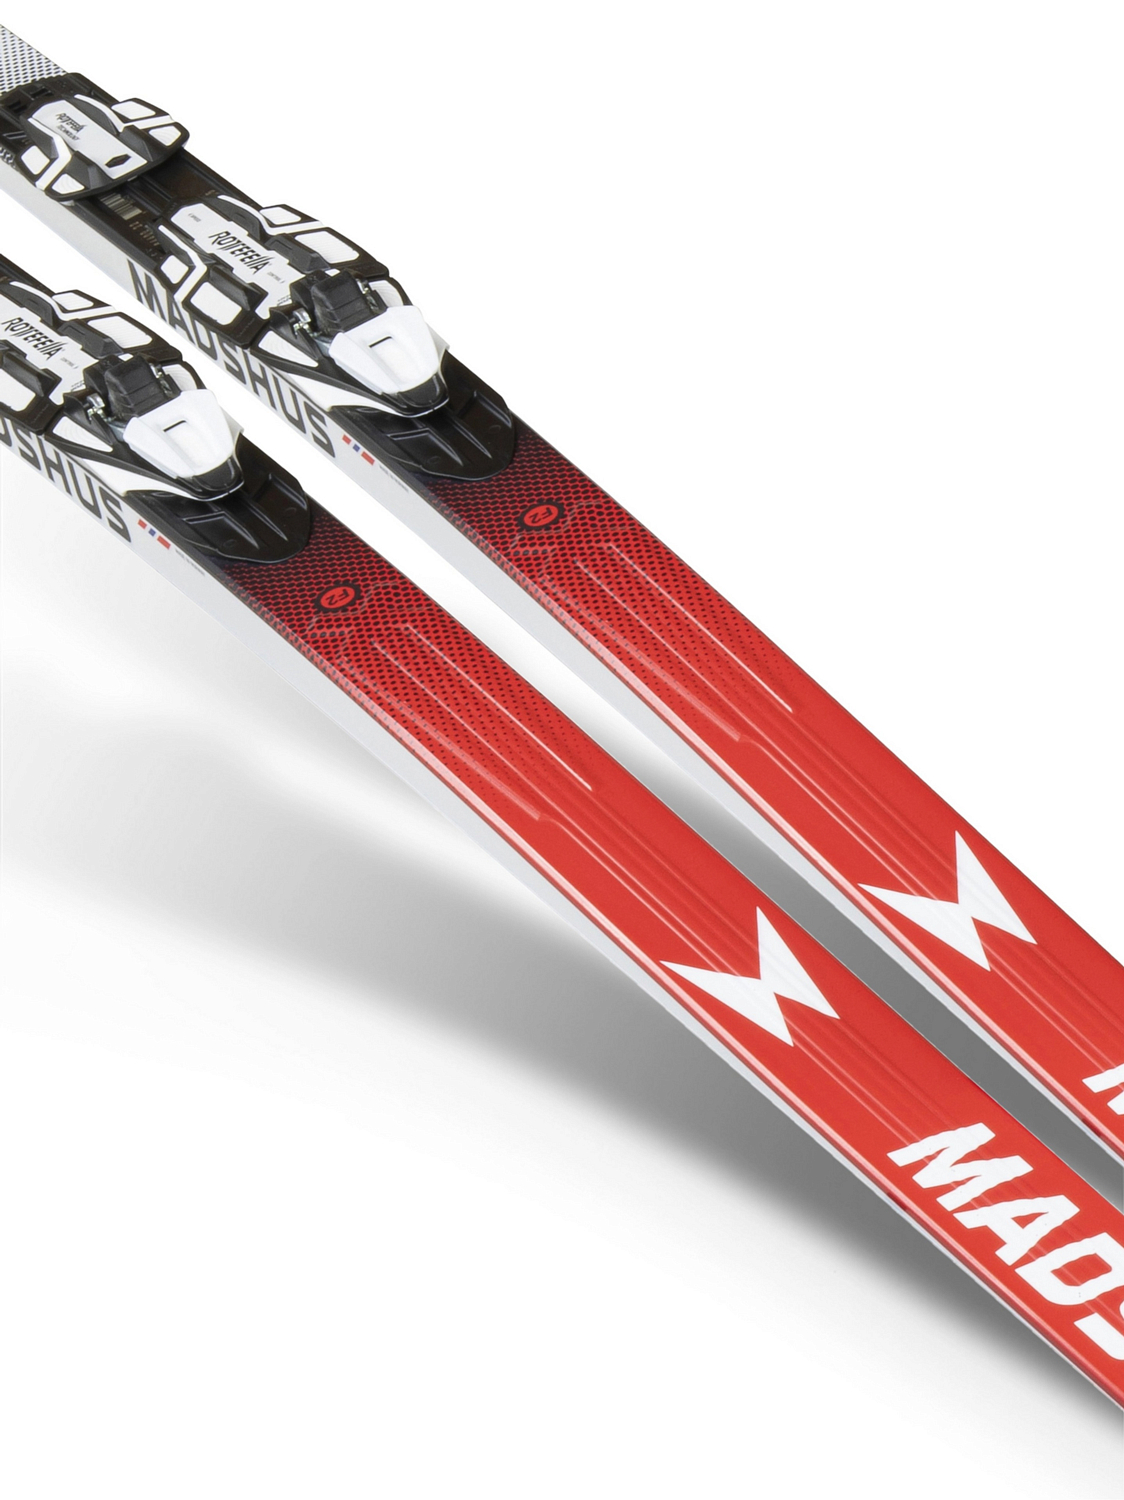 Лыжи Madshus Redline 3.0. Лыжи Madshus Redline 2.0. Беговые лыжи Madshus Redline 3.0 f3. Лыжи мадшус Редлайн 3.0 2022/2023.